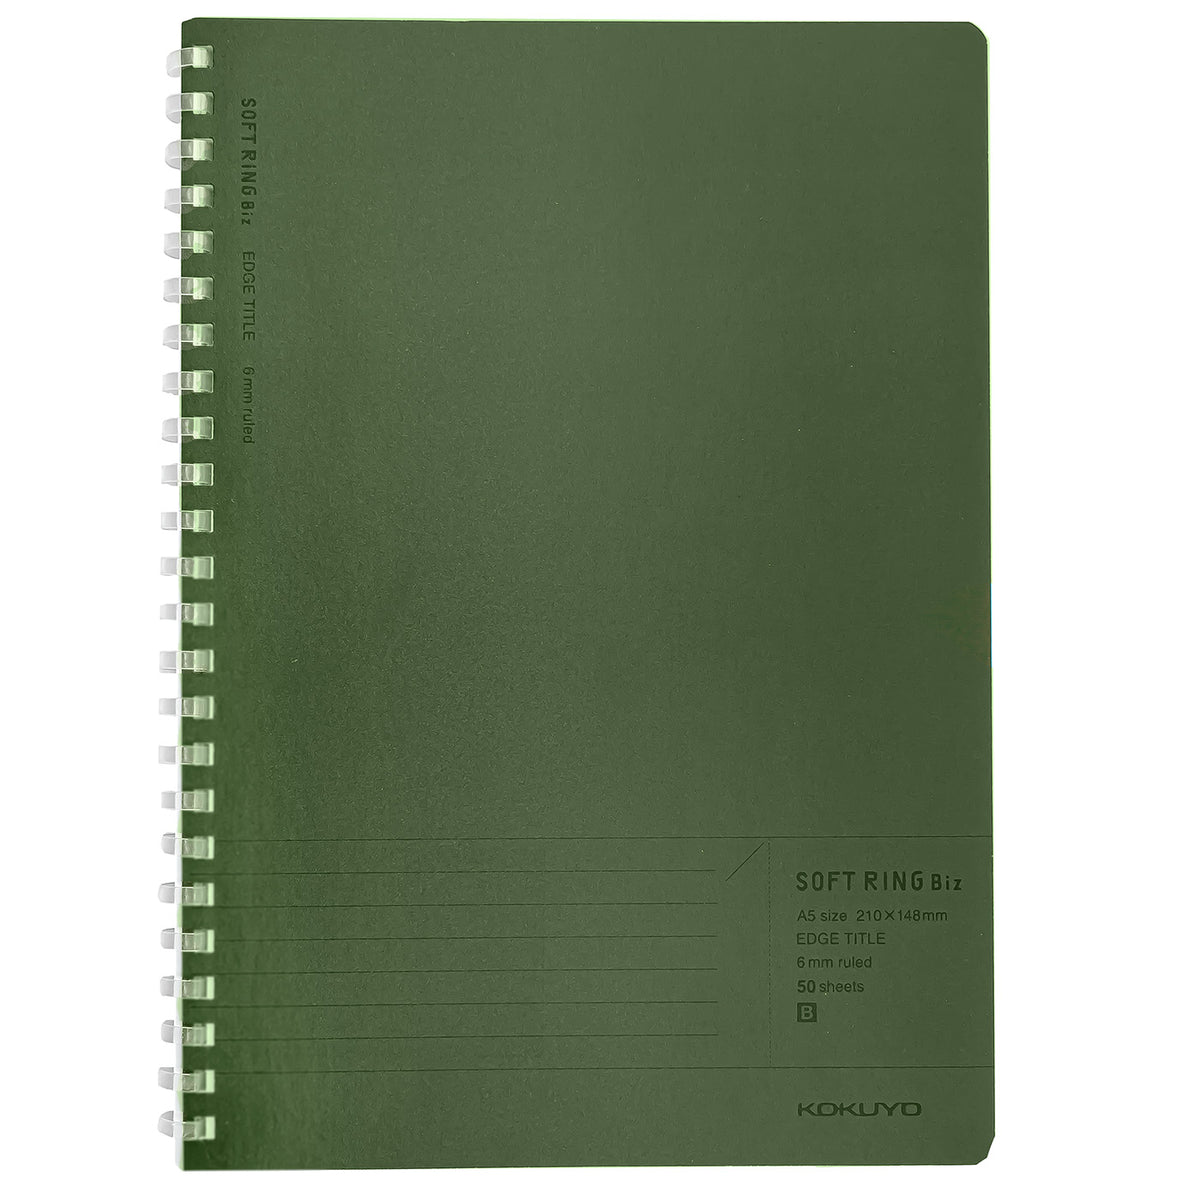 Kokuyo Biz A5 Soft Ring Notebook- Green